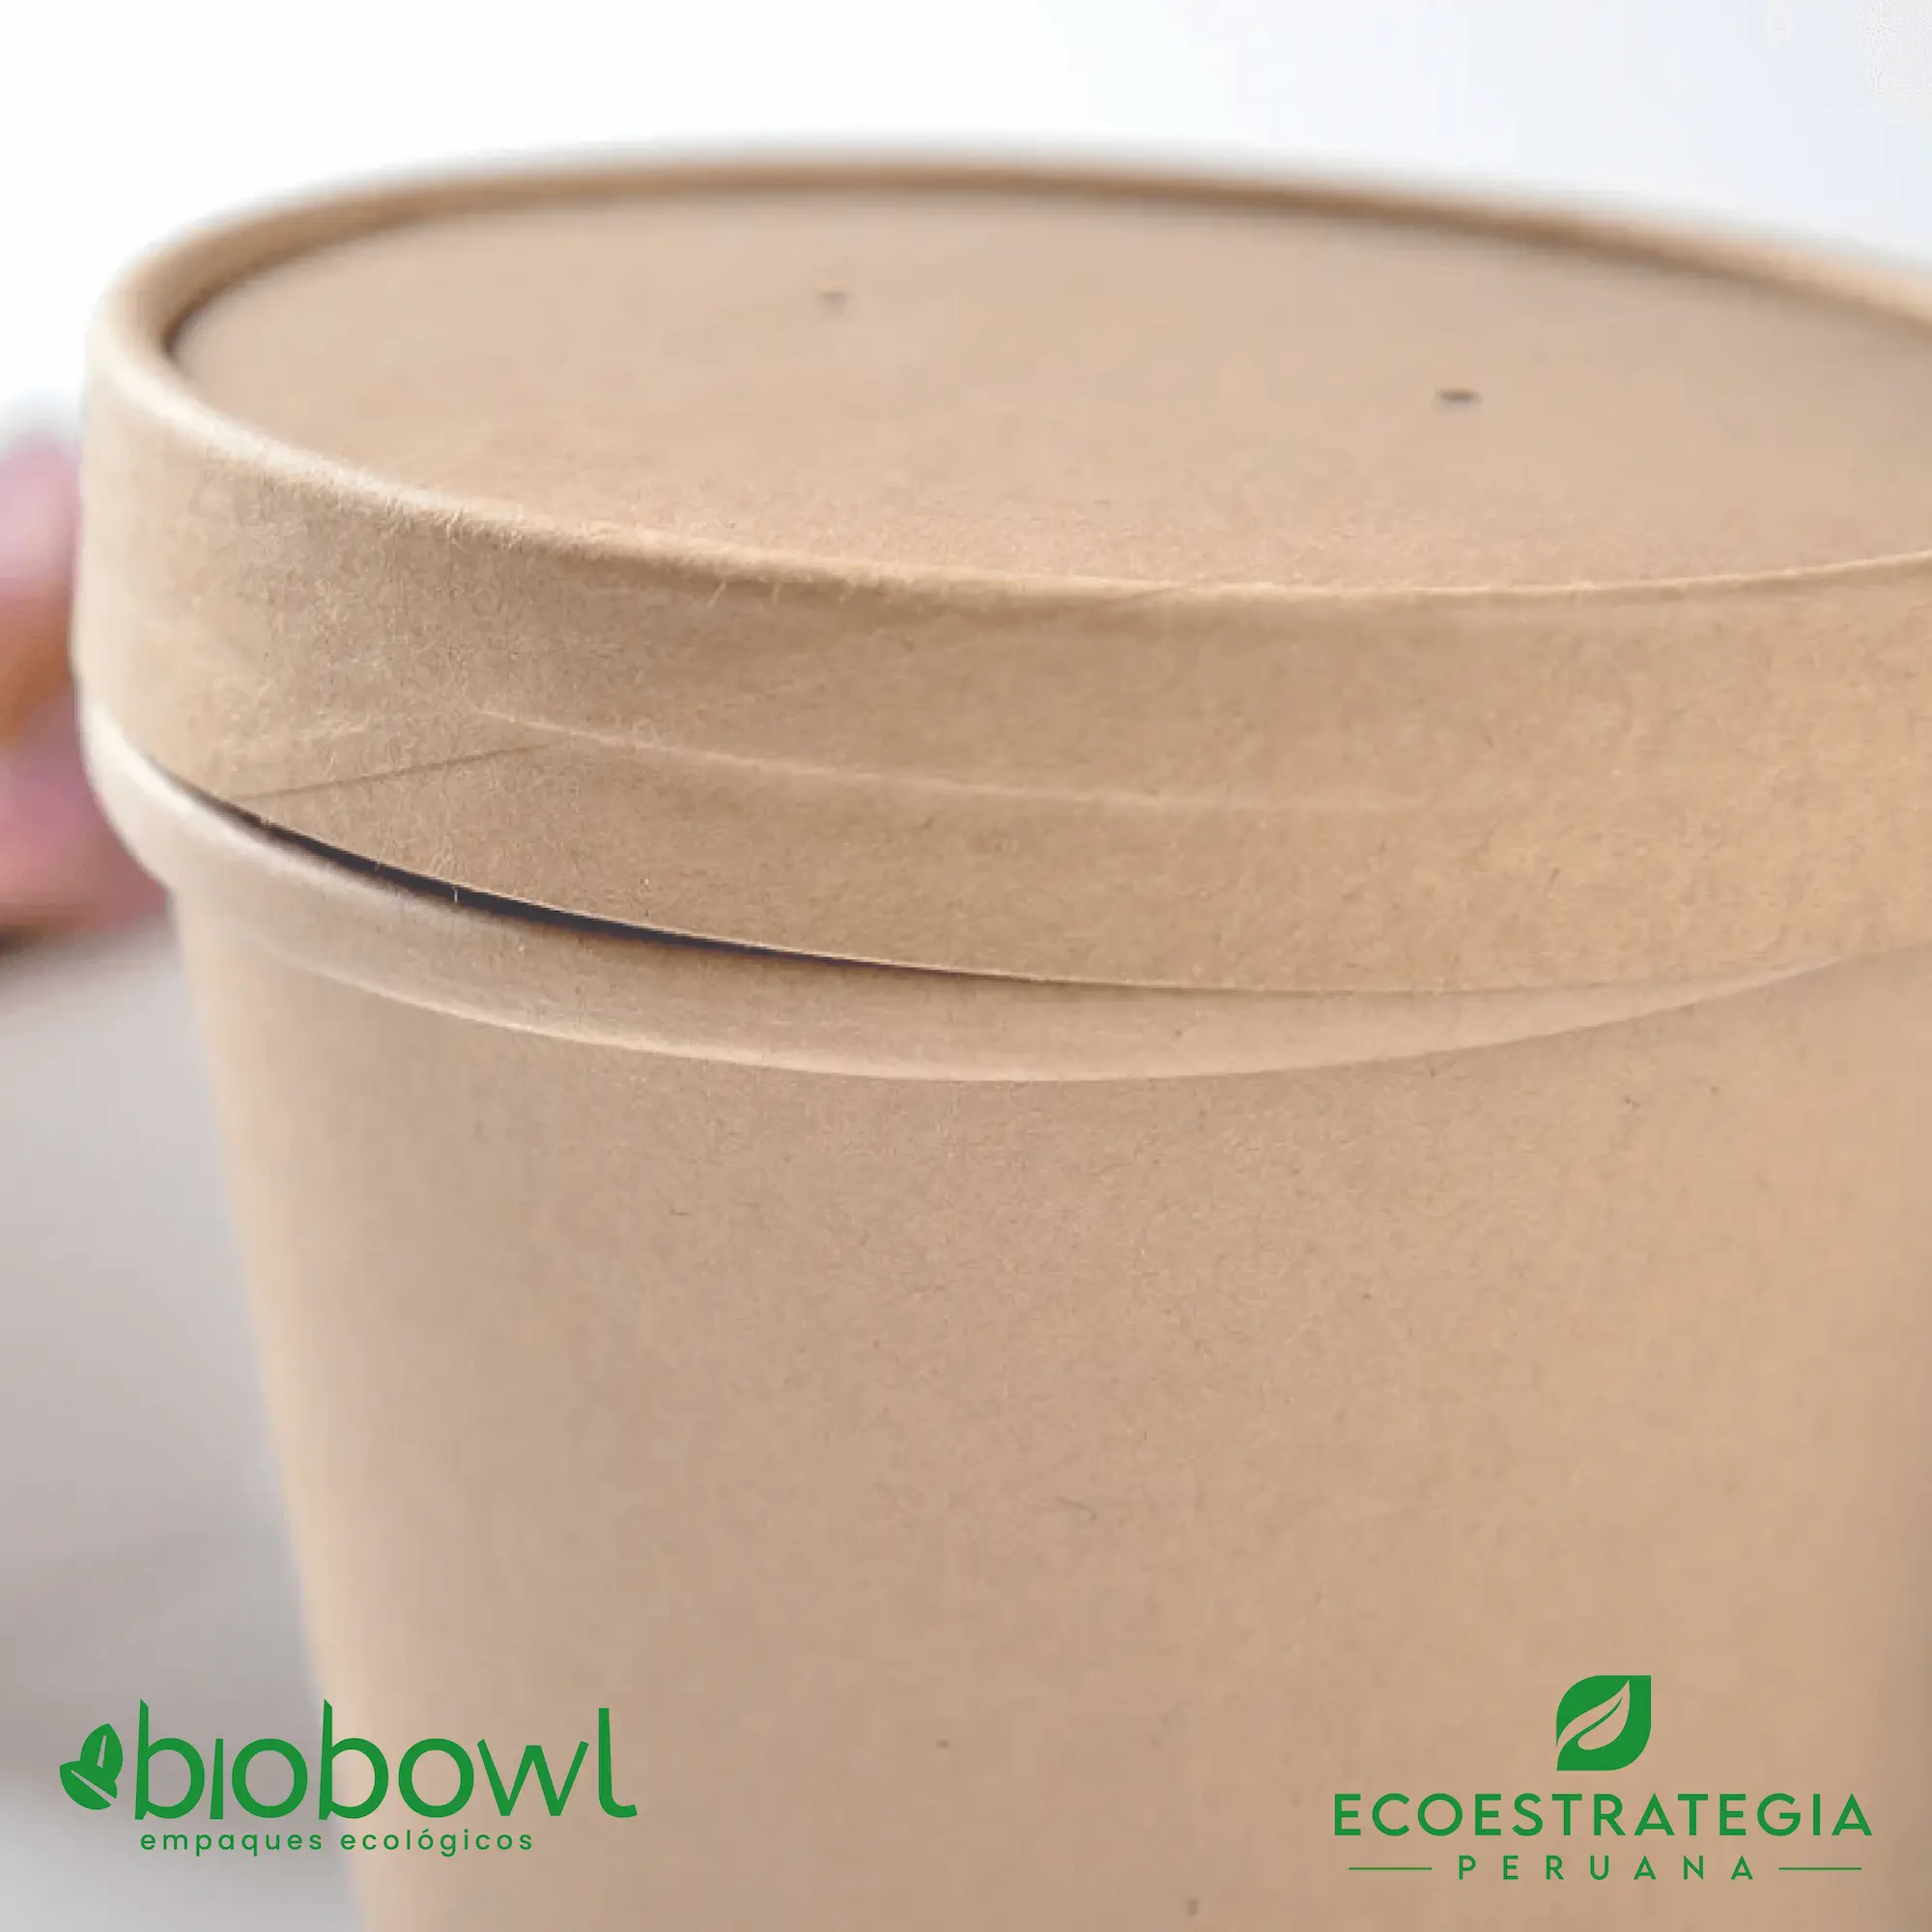 El bowl de bambú biodegradable de 32oz o EP-S32, es también conocido como bowl bamboo 32oz o bambú sopero 32oz, bambú salad 32oz, bowl para ensalada con tapa pet 32oz o sopero con fibra de bambú 32oz, bowl bambú ecologico, bowl bambú reciclable, bowl descartable, bowl bambu postres 32oz, bowl bambu helados 32oz, envase de cartón biodegadable, envases biodegradables Perú, envases biodegradables lima, envases biodegradables peru, envases de cartón biodegradables, contenedores de cartón biodegradables